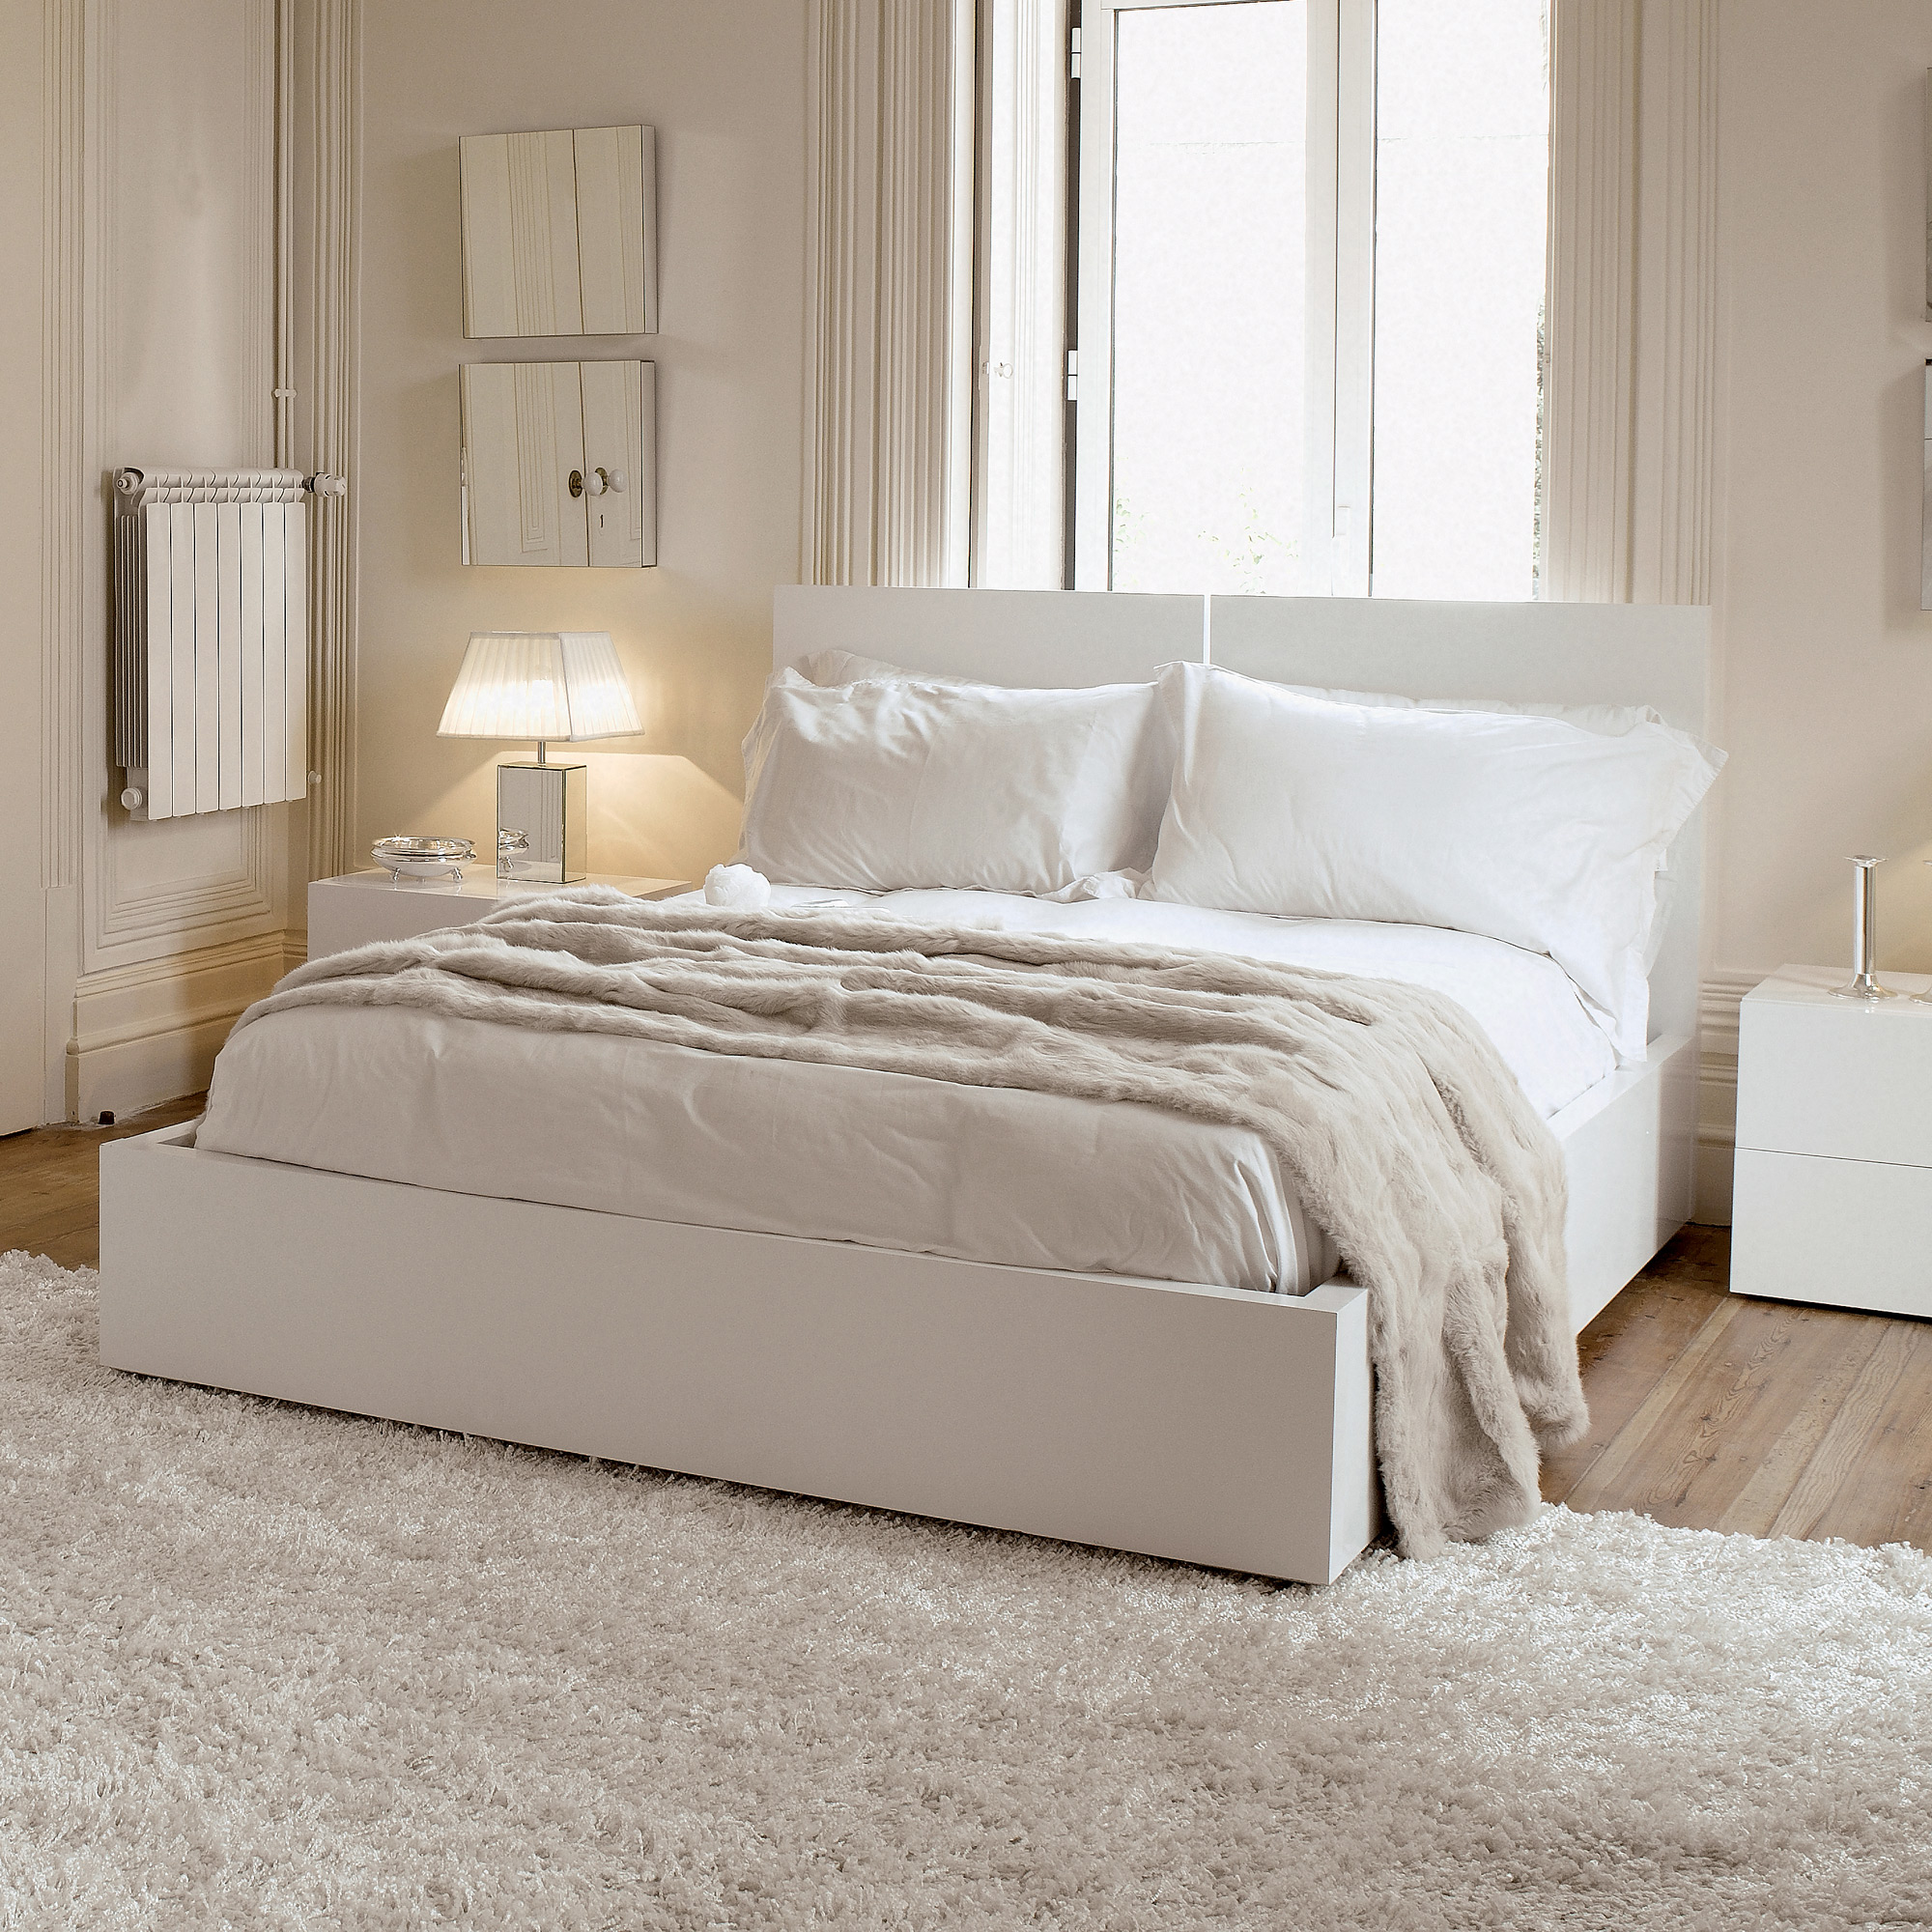 Спальня с белой мебелью дизайн фото » Картинки и фотографии дизайна .